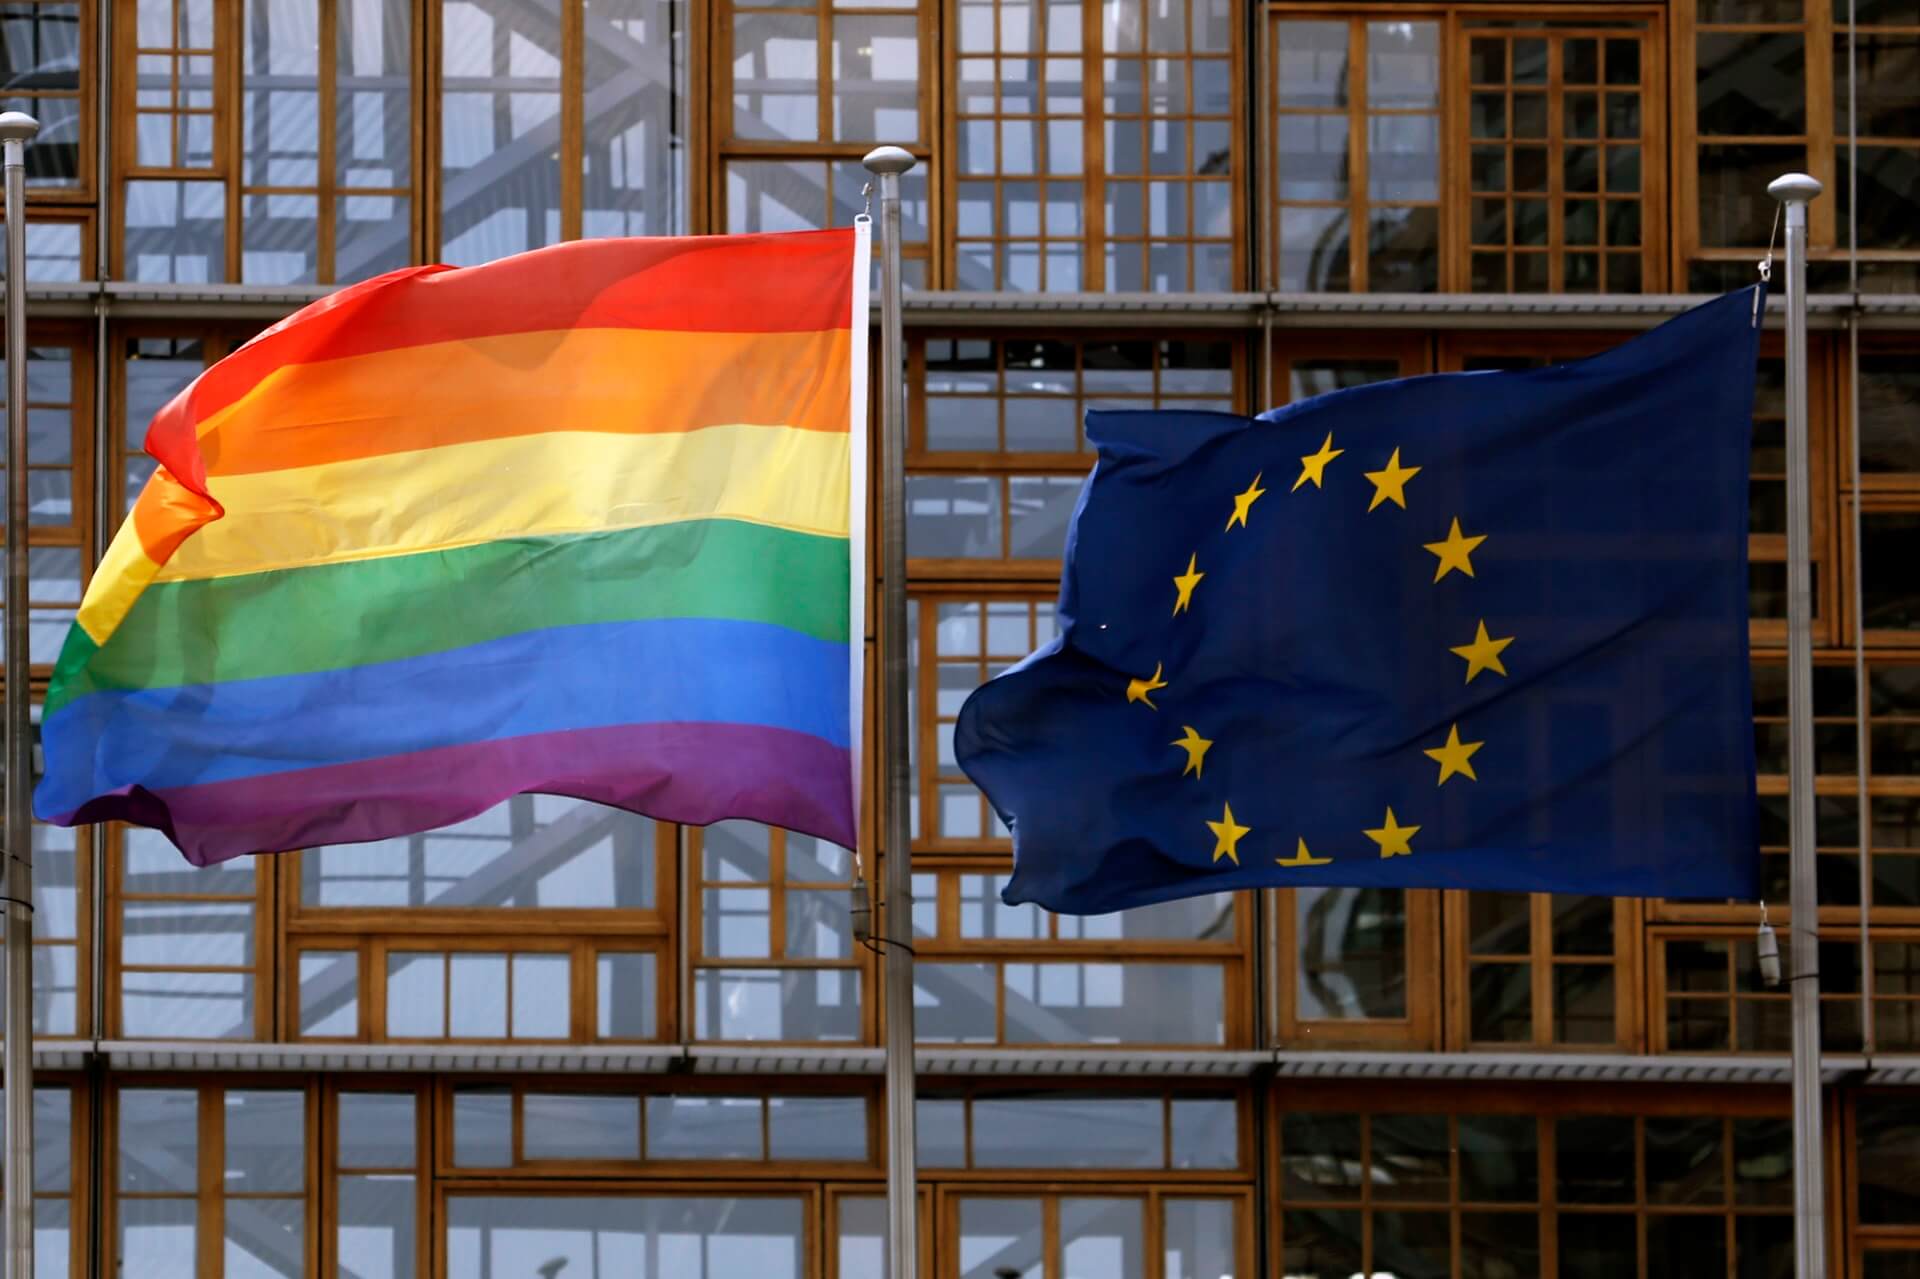 EUROPOSŁANKA ZARZUCA POLSCE ŁAMANIE PRAW LGBT